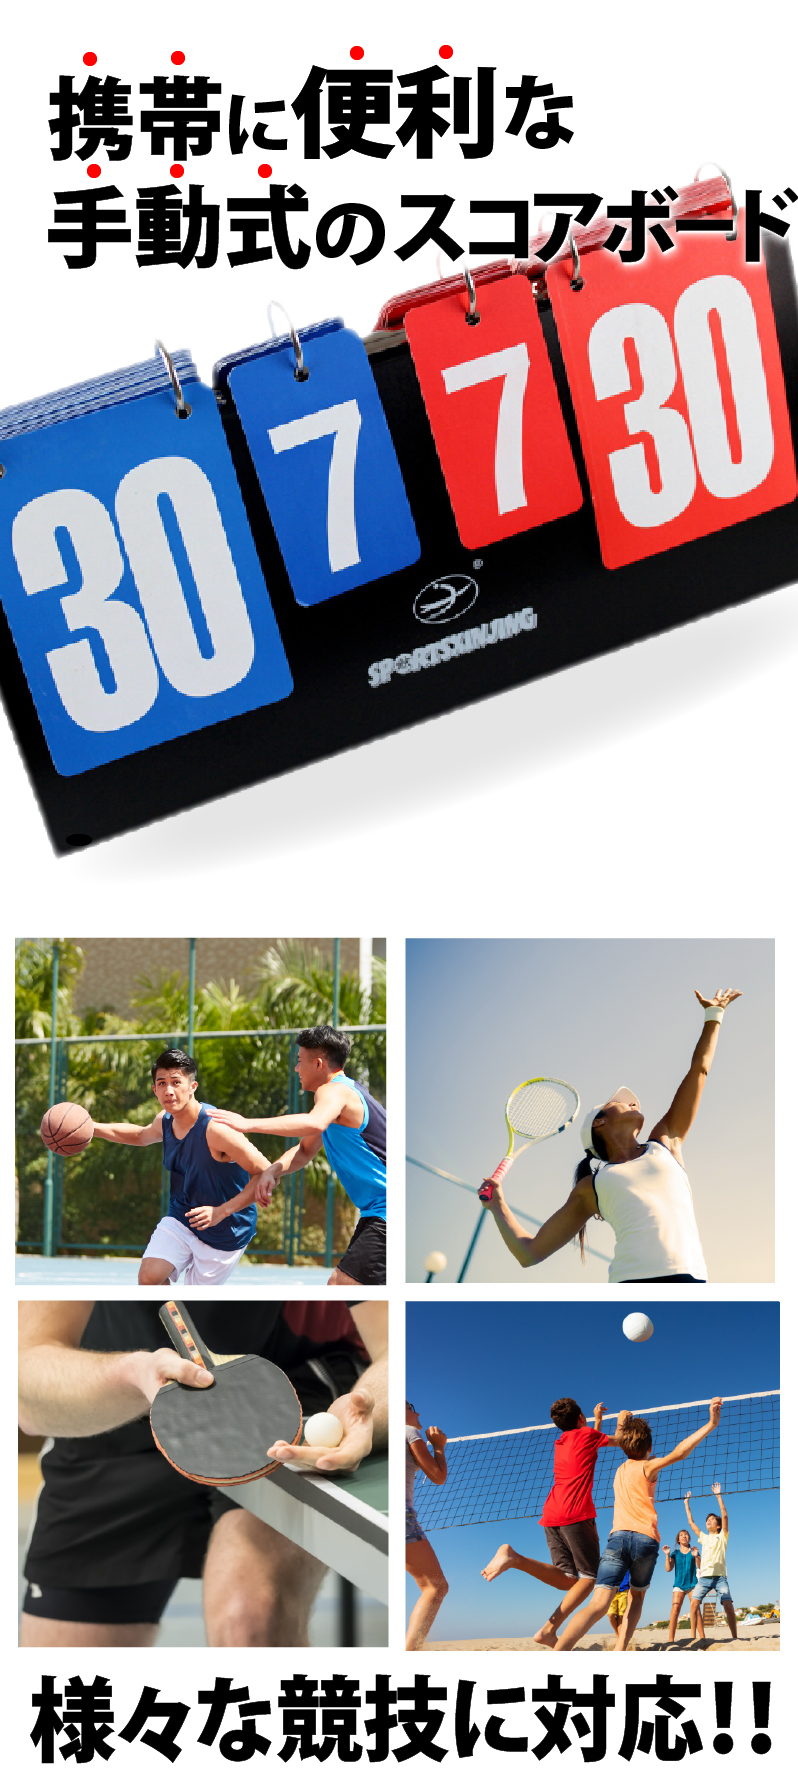 スコアボード 得点ボード 得点板 数字 卓球 サッカー 運動会 野球 バレー バドミントン テニス 設備、備品